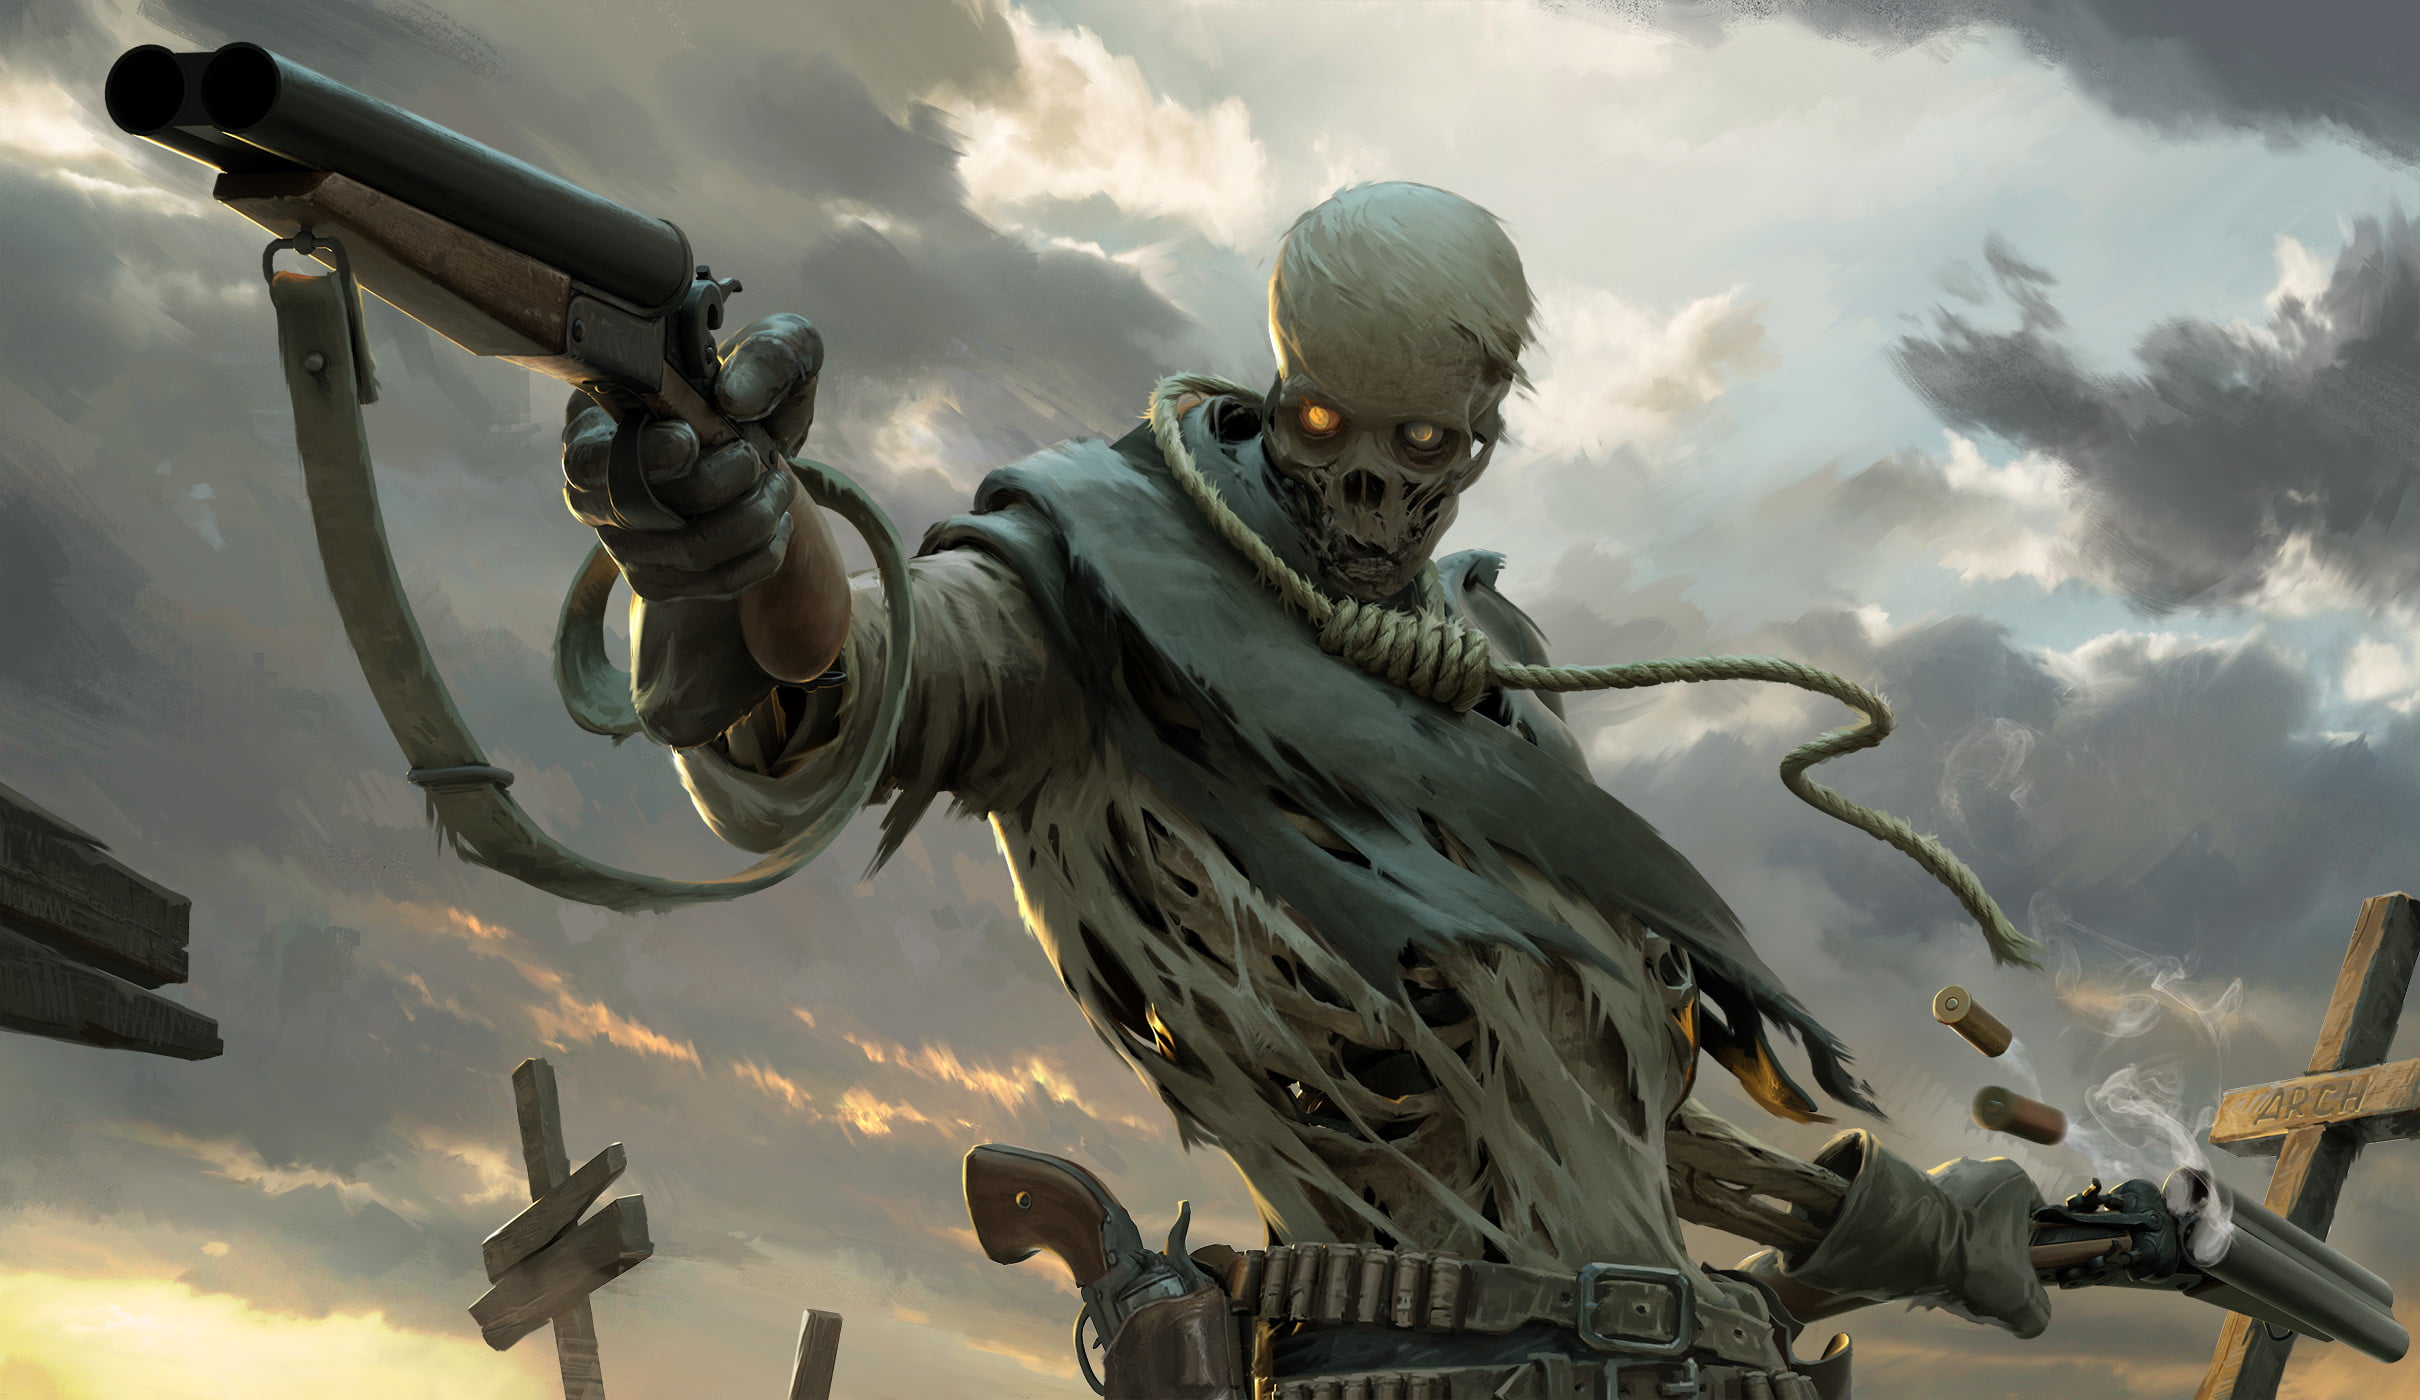 Roman Chaliy, skeleton, shotgun, pistol, noose